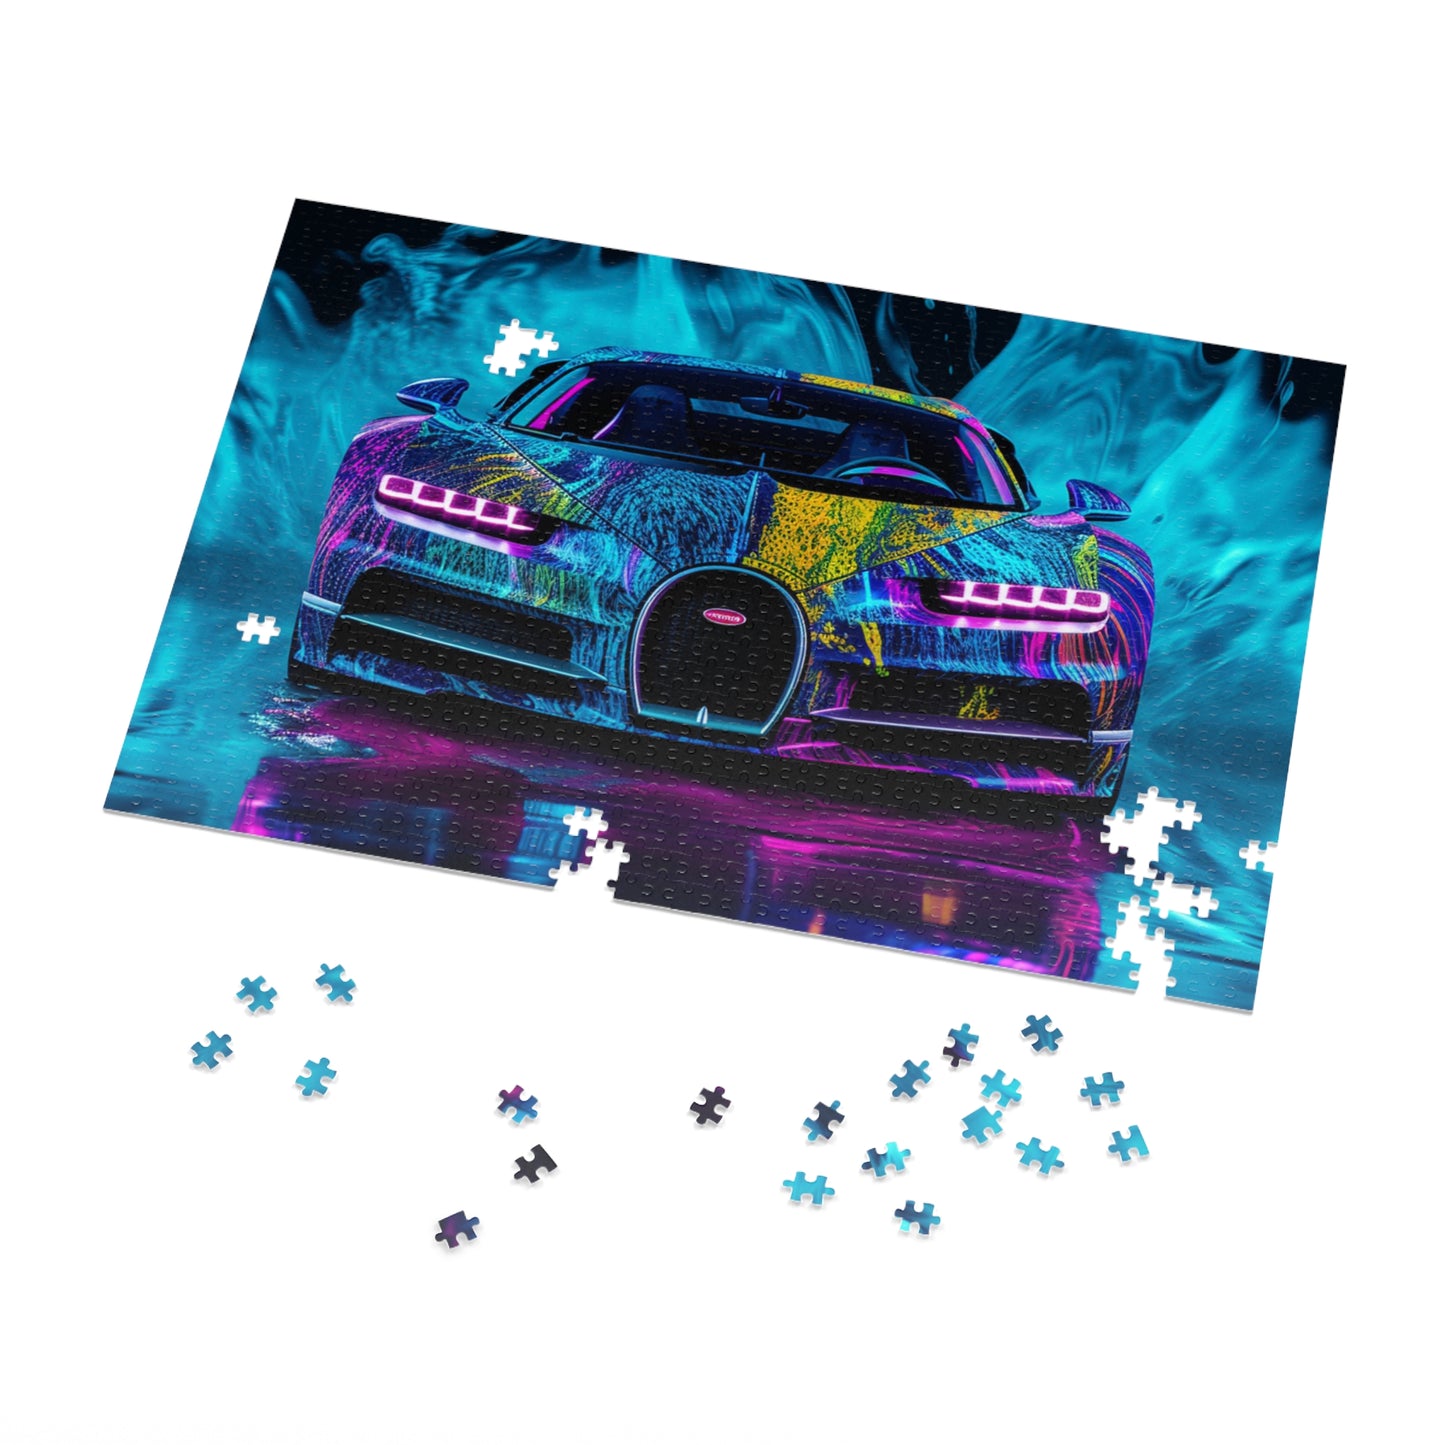 Jigsaw Puzzle (30, 110, 252, 500,1000-Piece) Bugatti Water 2